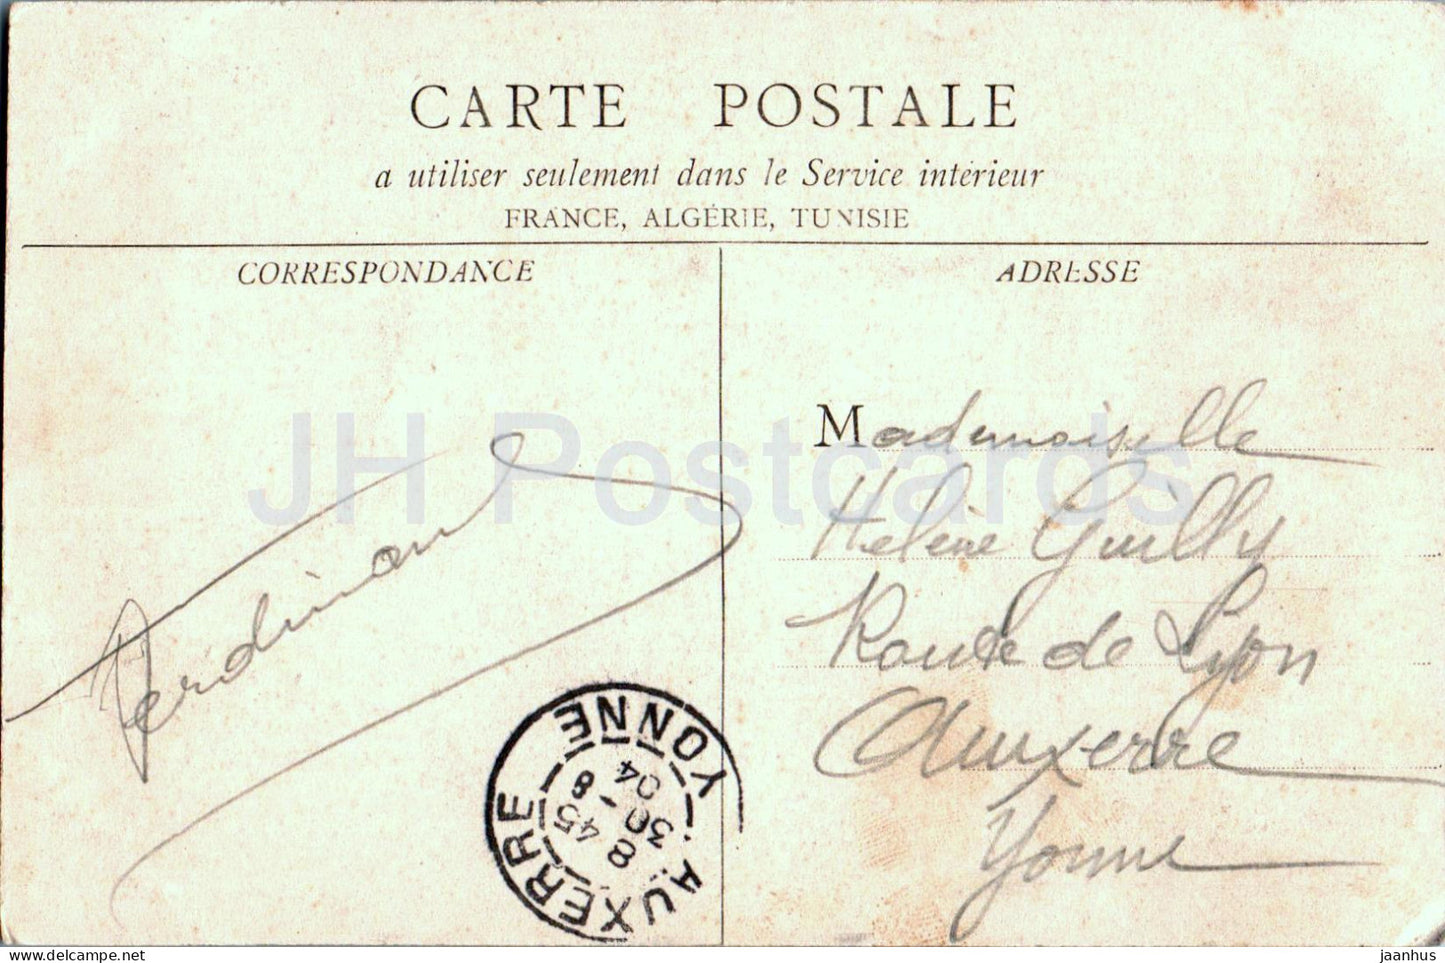 Alais - Eglise St Joseph - église - carte postale ancienne - 1904 - France - utilisé 